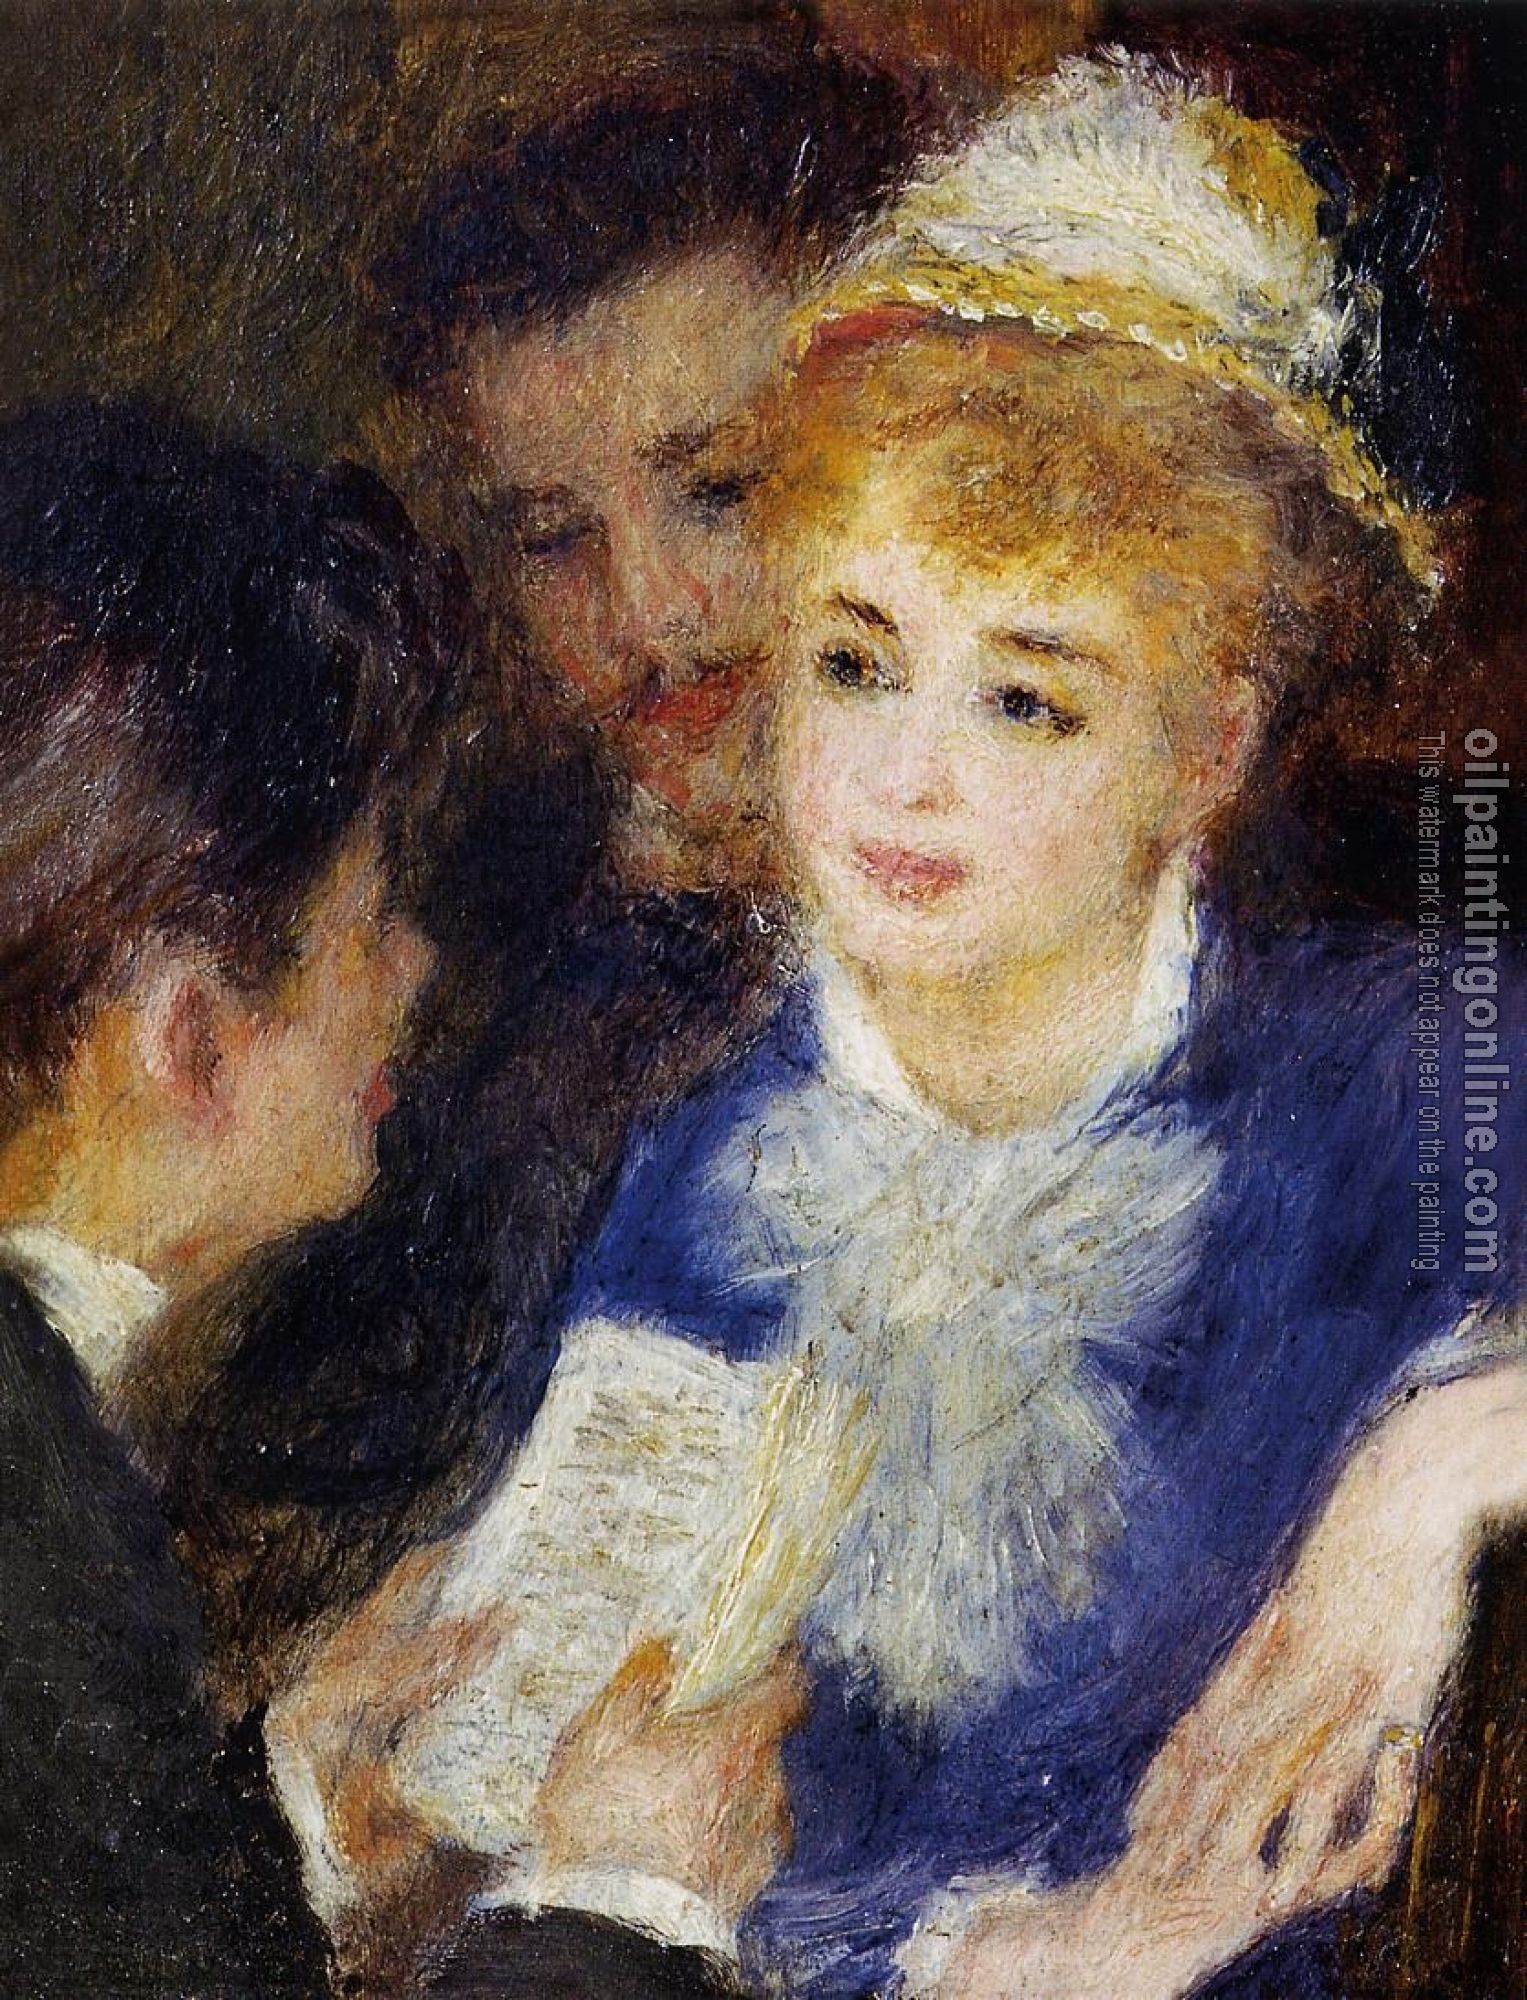 Renoir, Pierre Auguste - Reading the Part